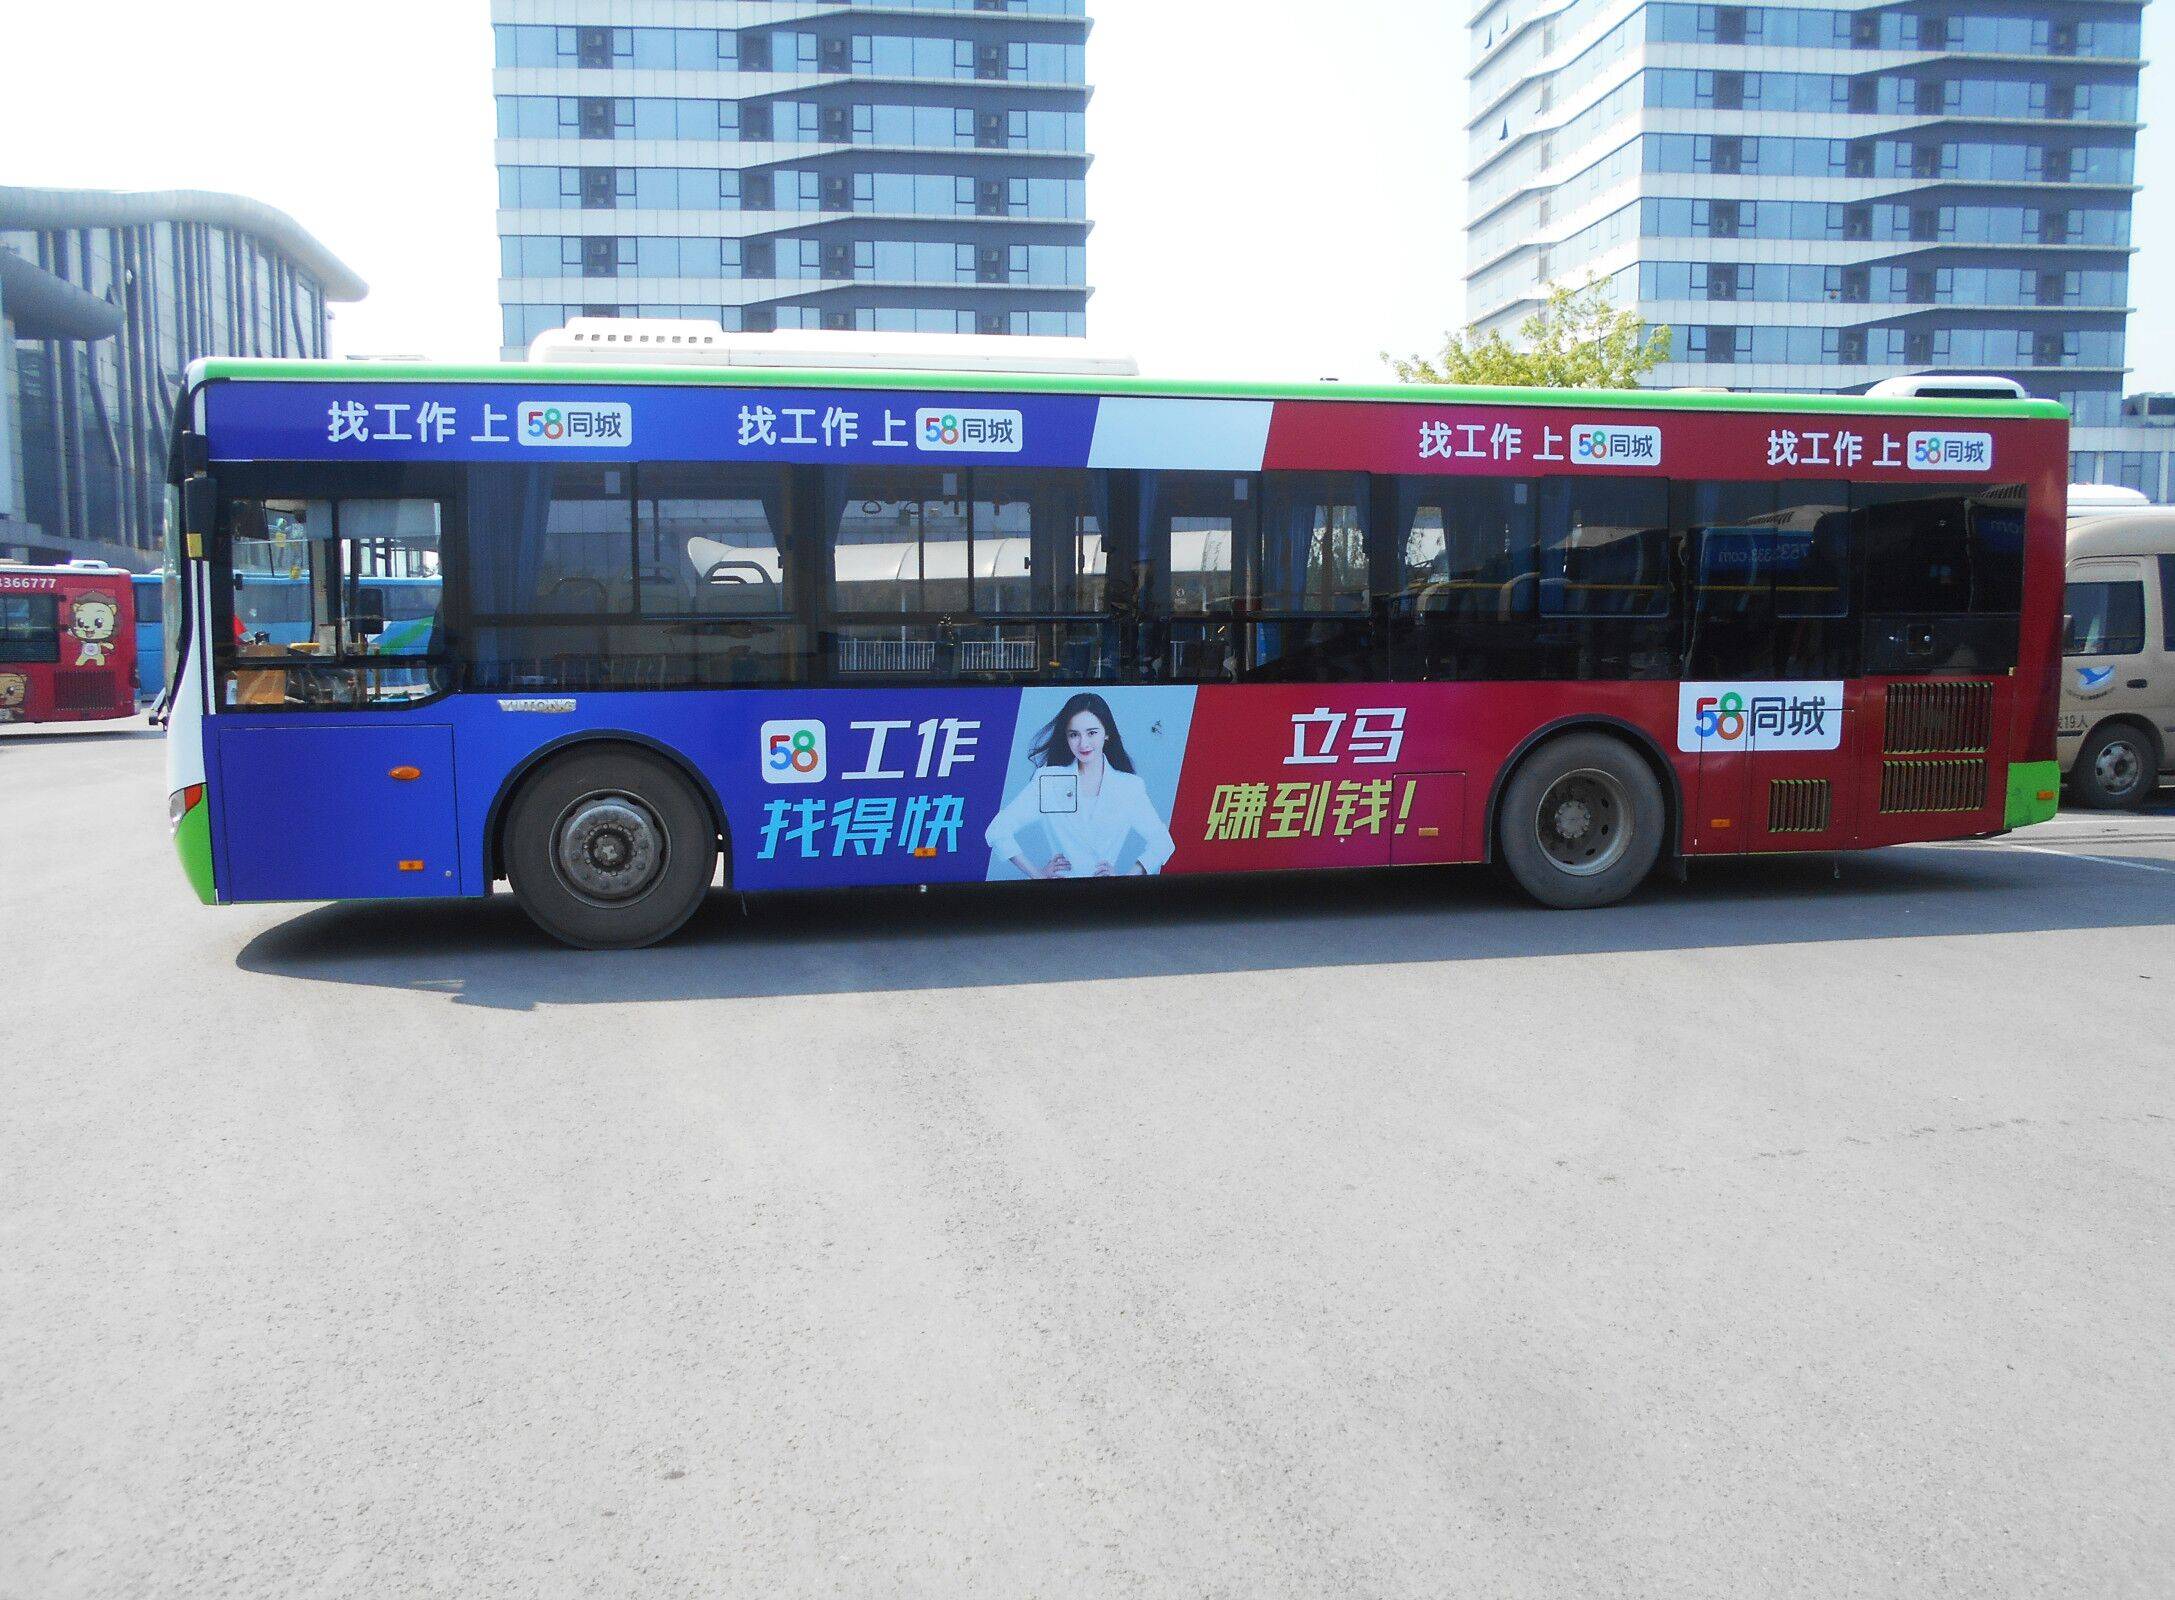 公交车体广告设计如何展现出脑洞大开的想法